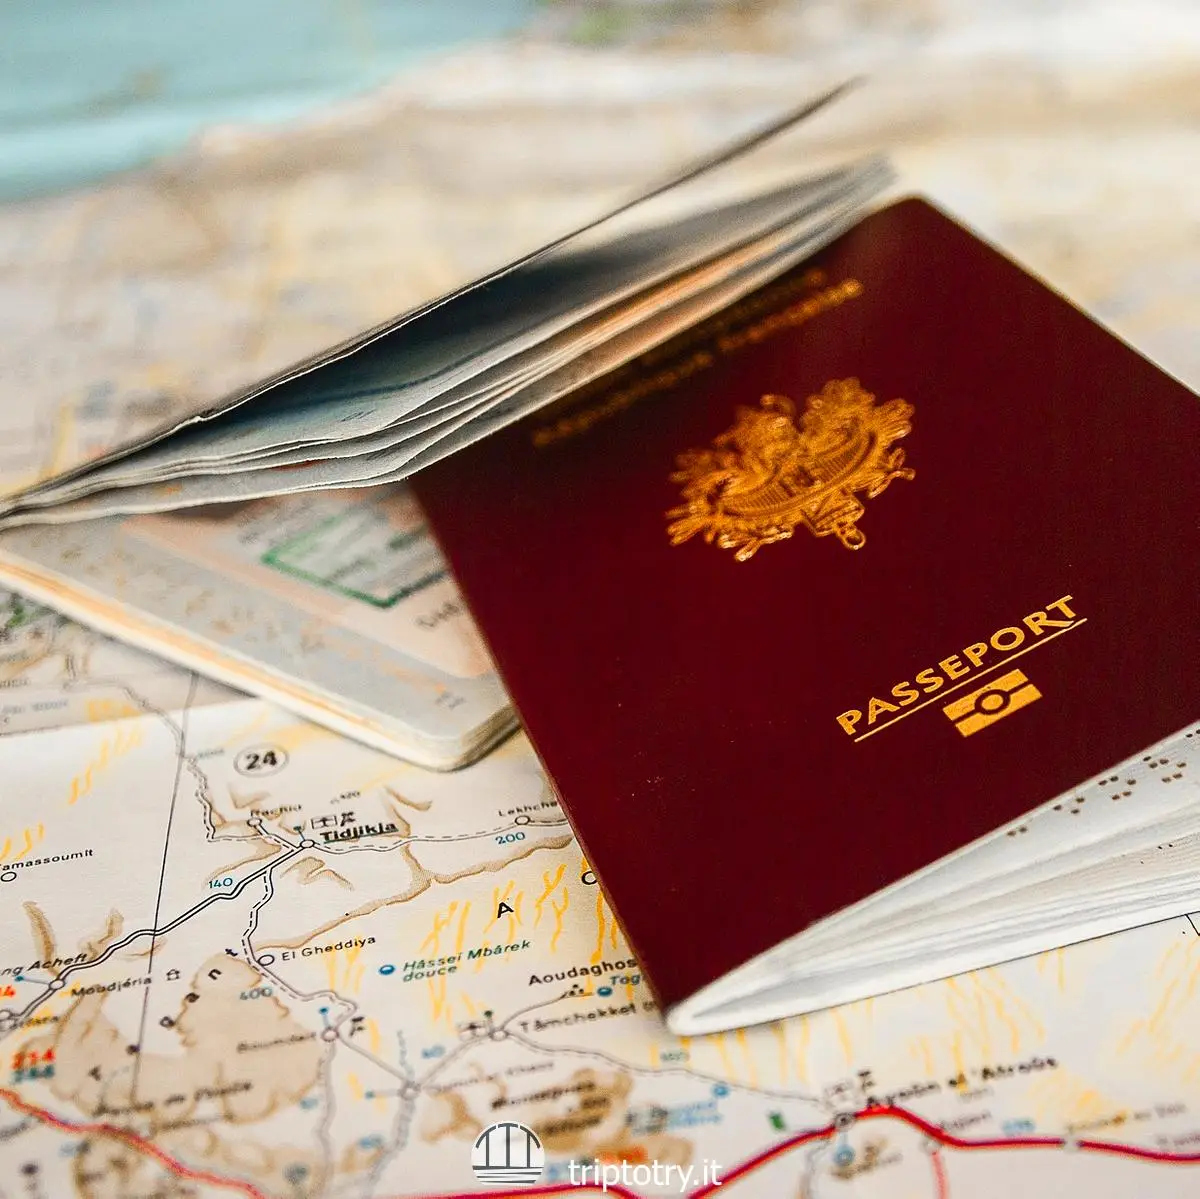 nei viaggi fai da te occorre controllare se servono documenti come il passaporto